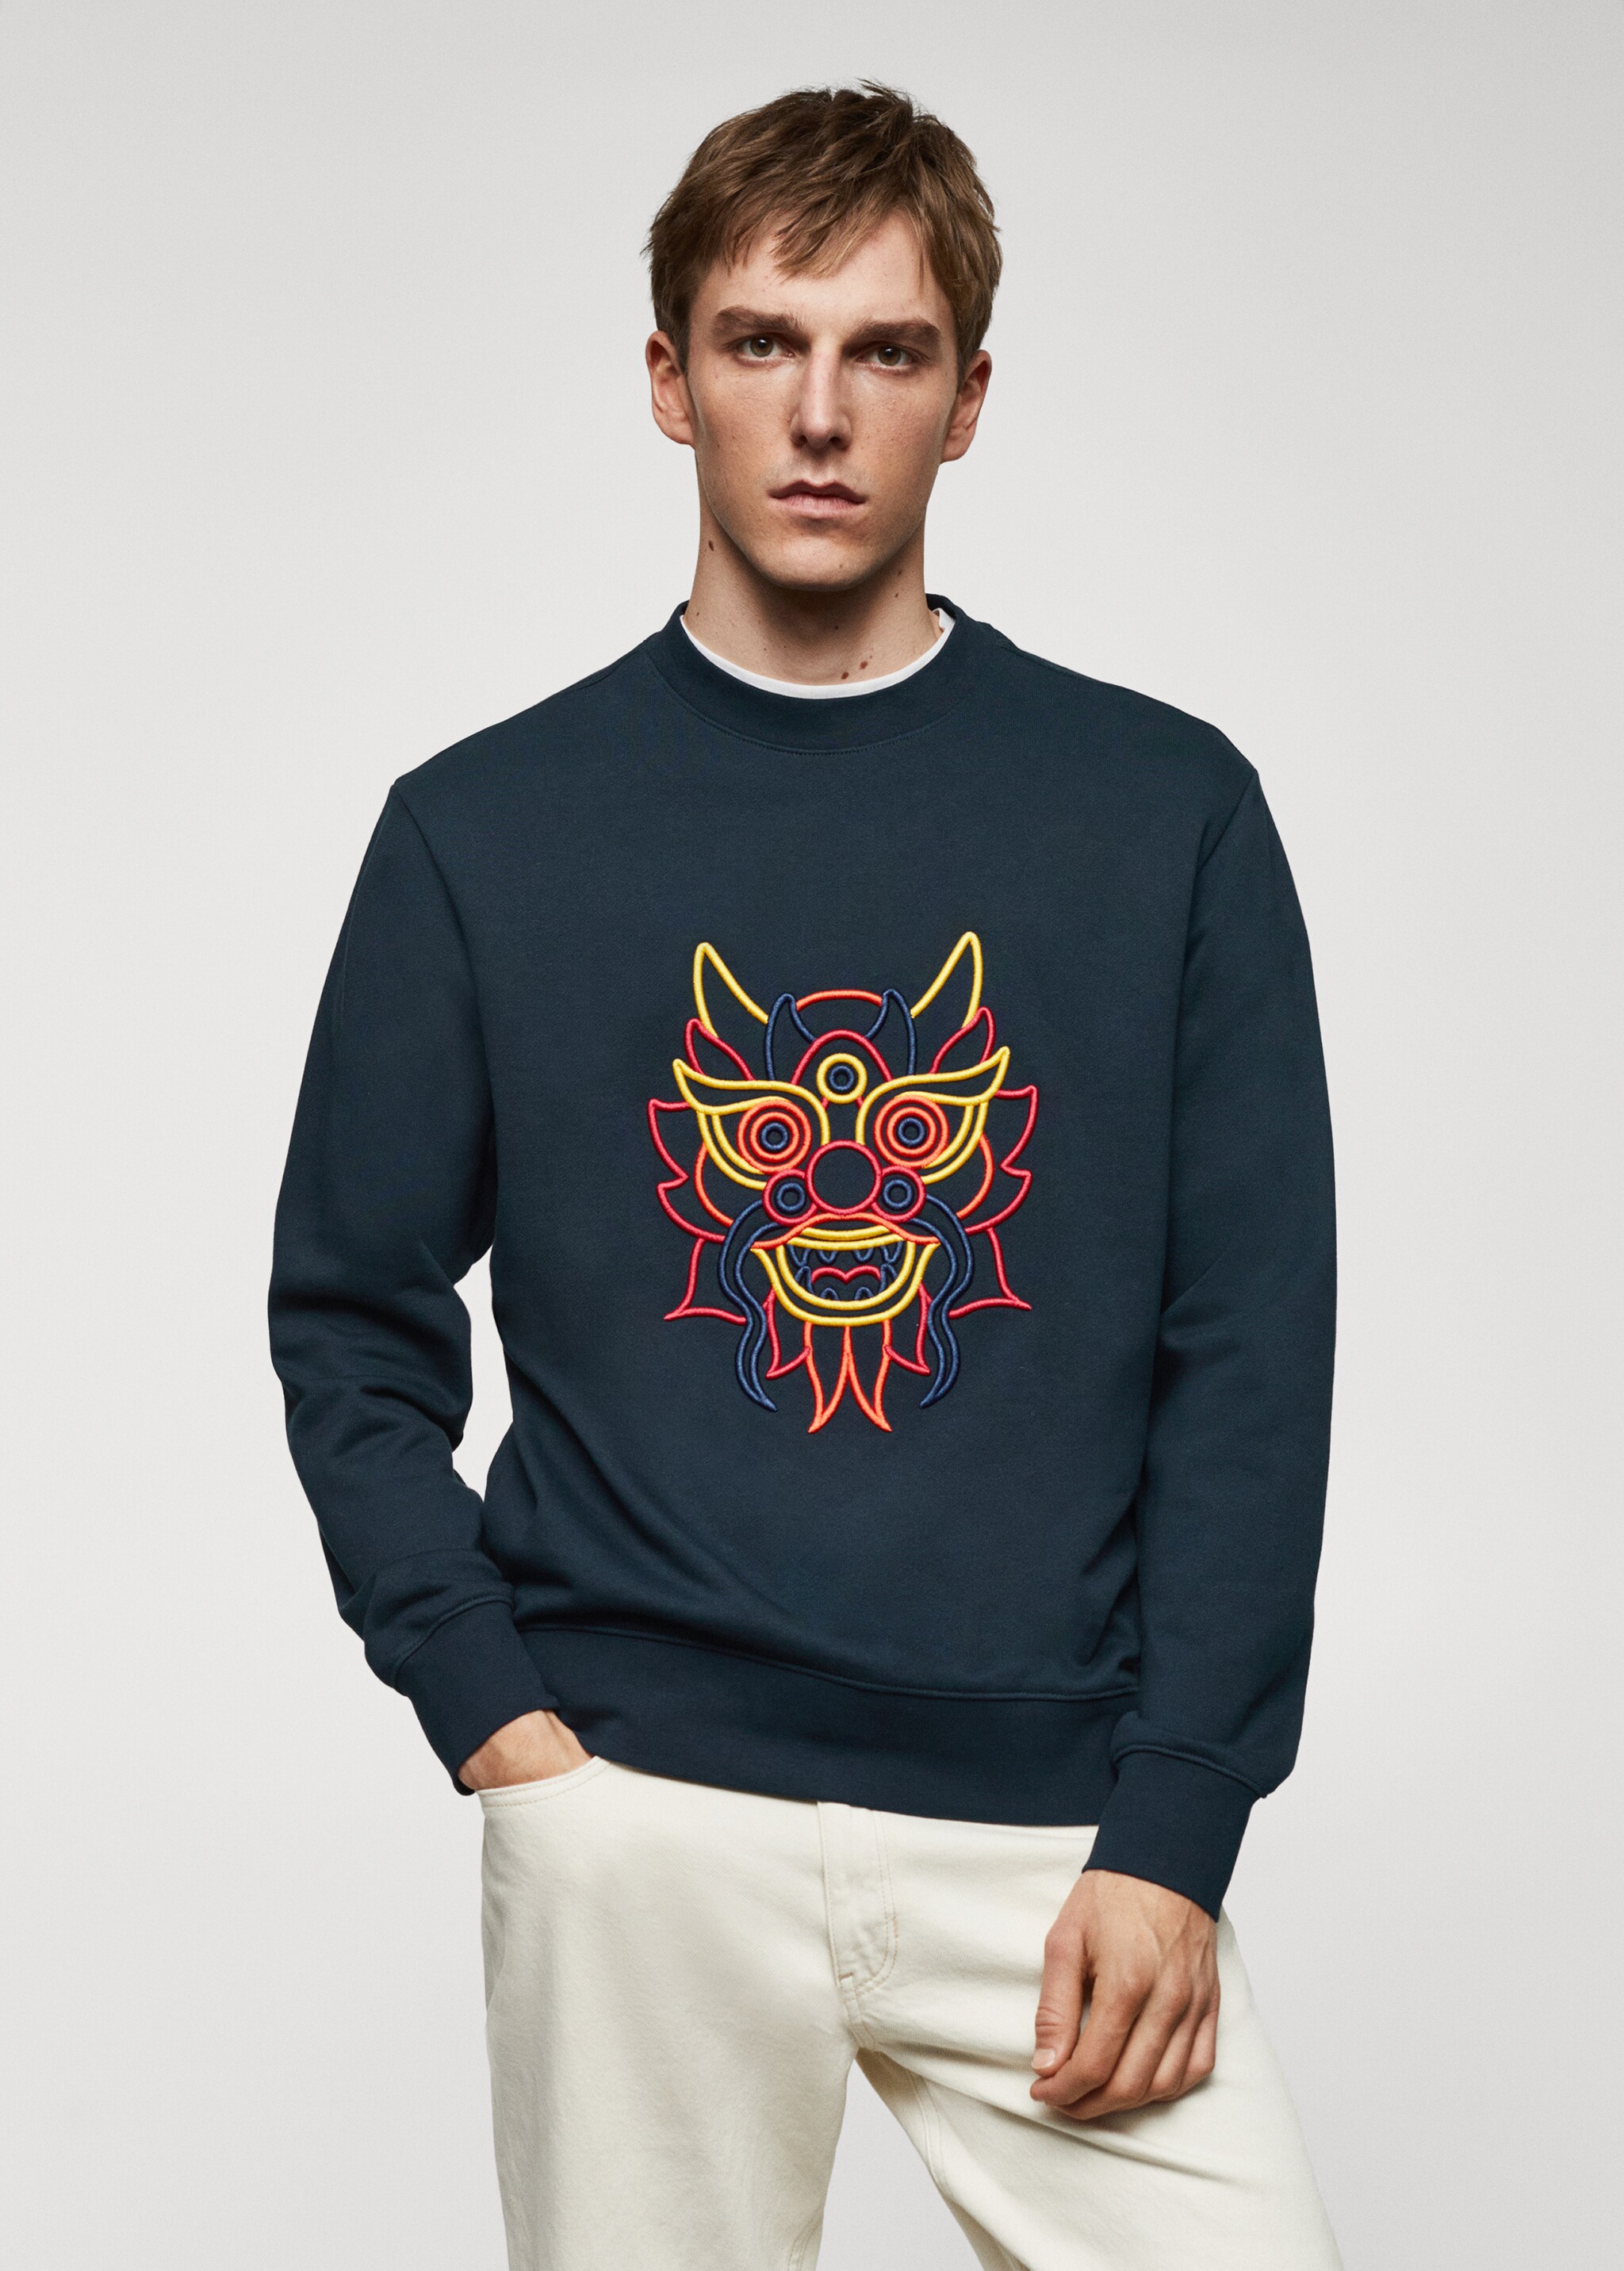 100% cotton sweatshirt embroidered detail - Medium plane